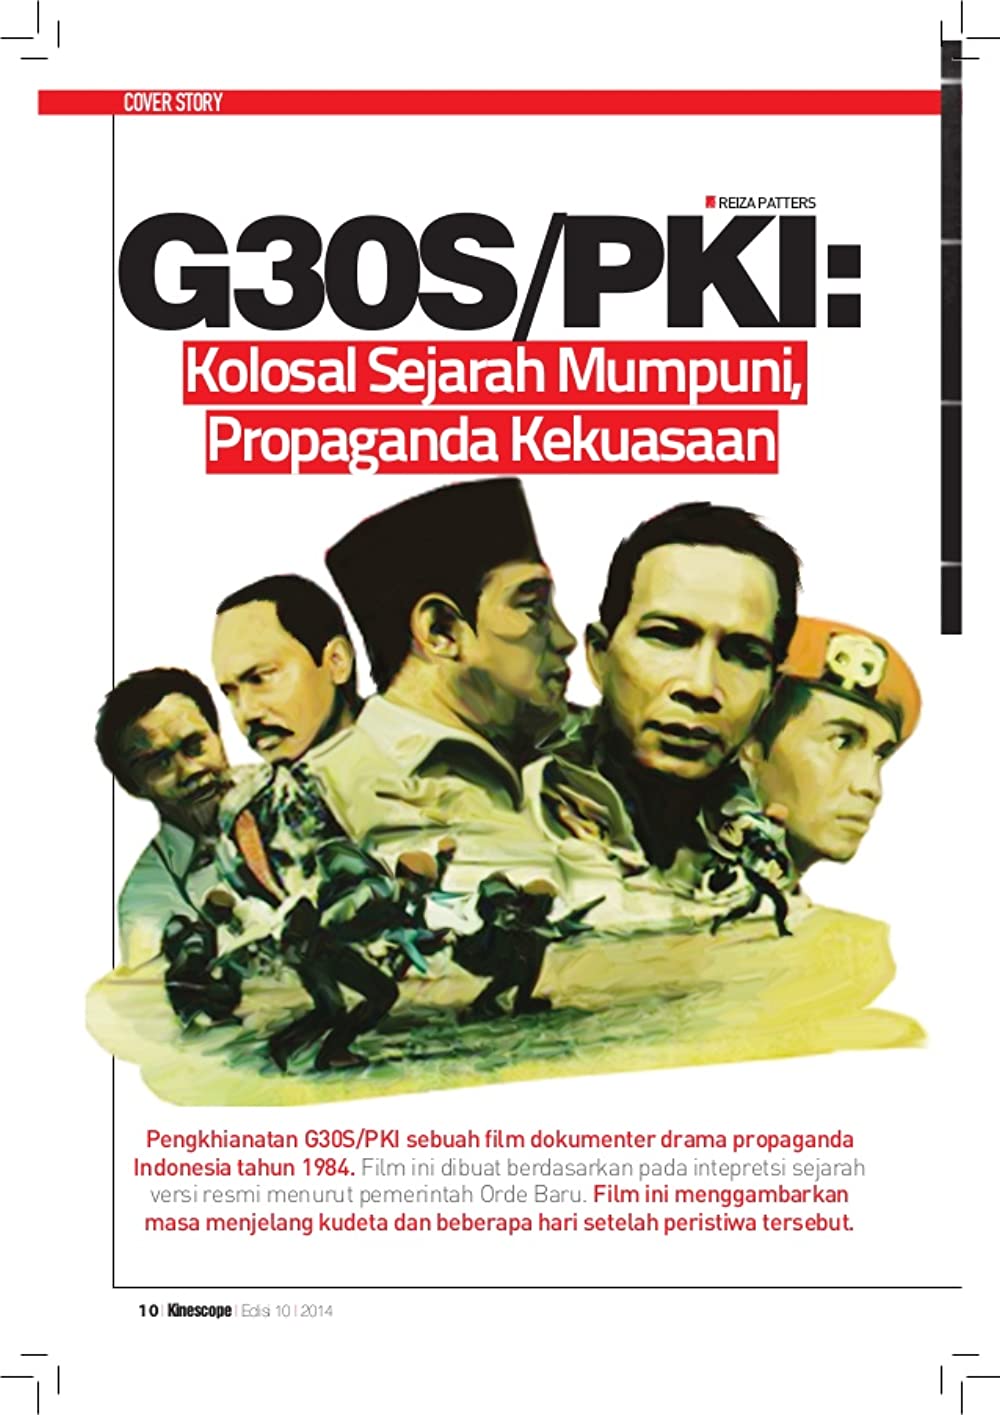 9 Film sejarah Indonesia tuai kontroversi, ada yang berujung gugatan